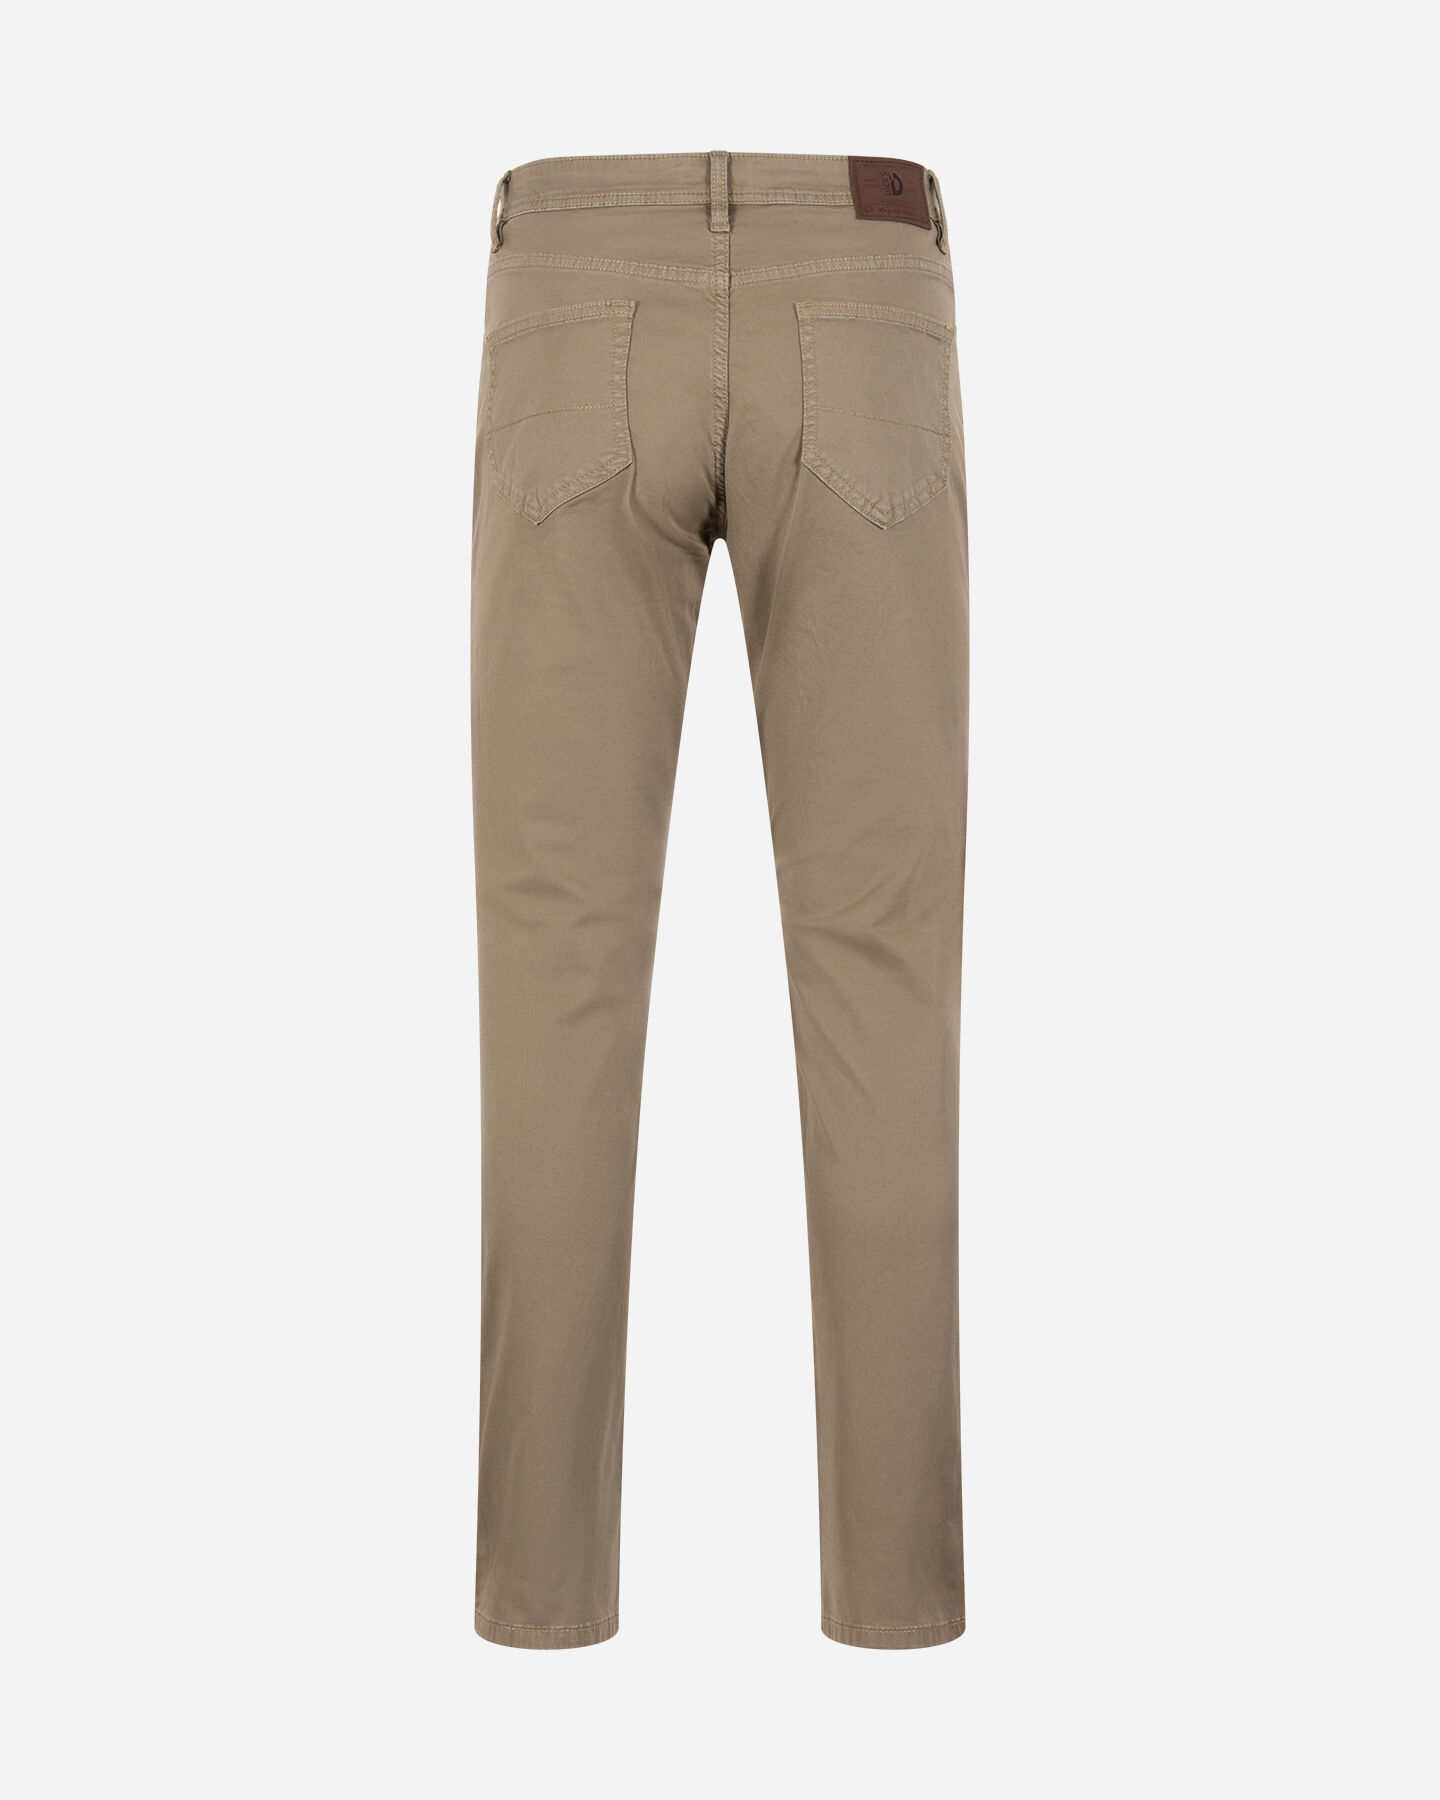  Pantalone DACK'S ESSENTIAL M S4129747|906|44 scatto 5